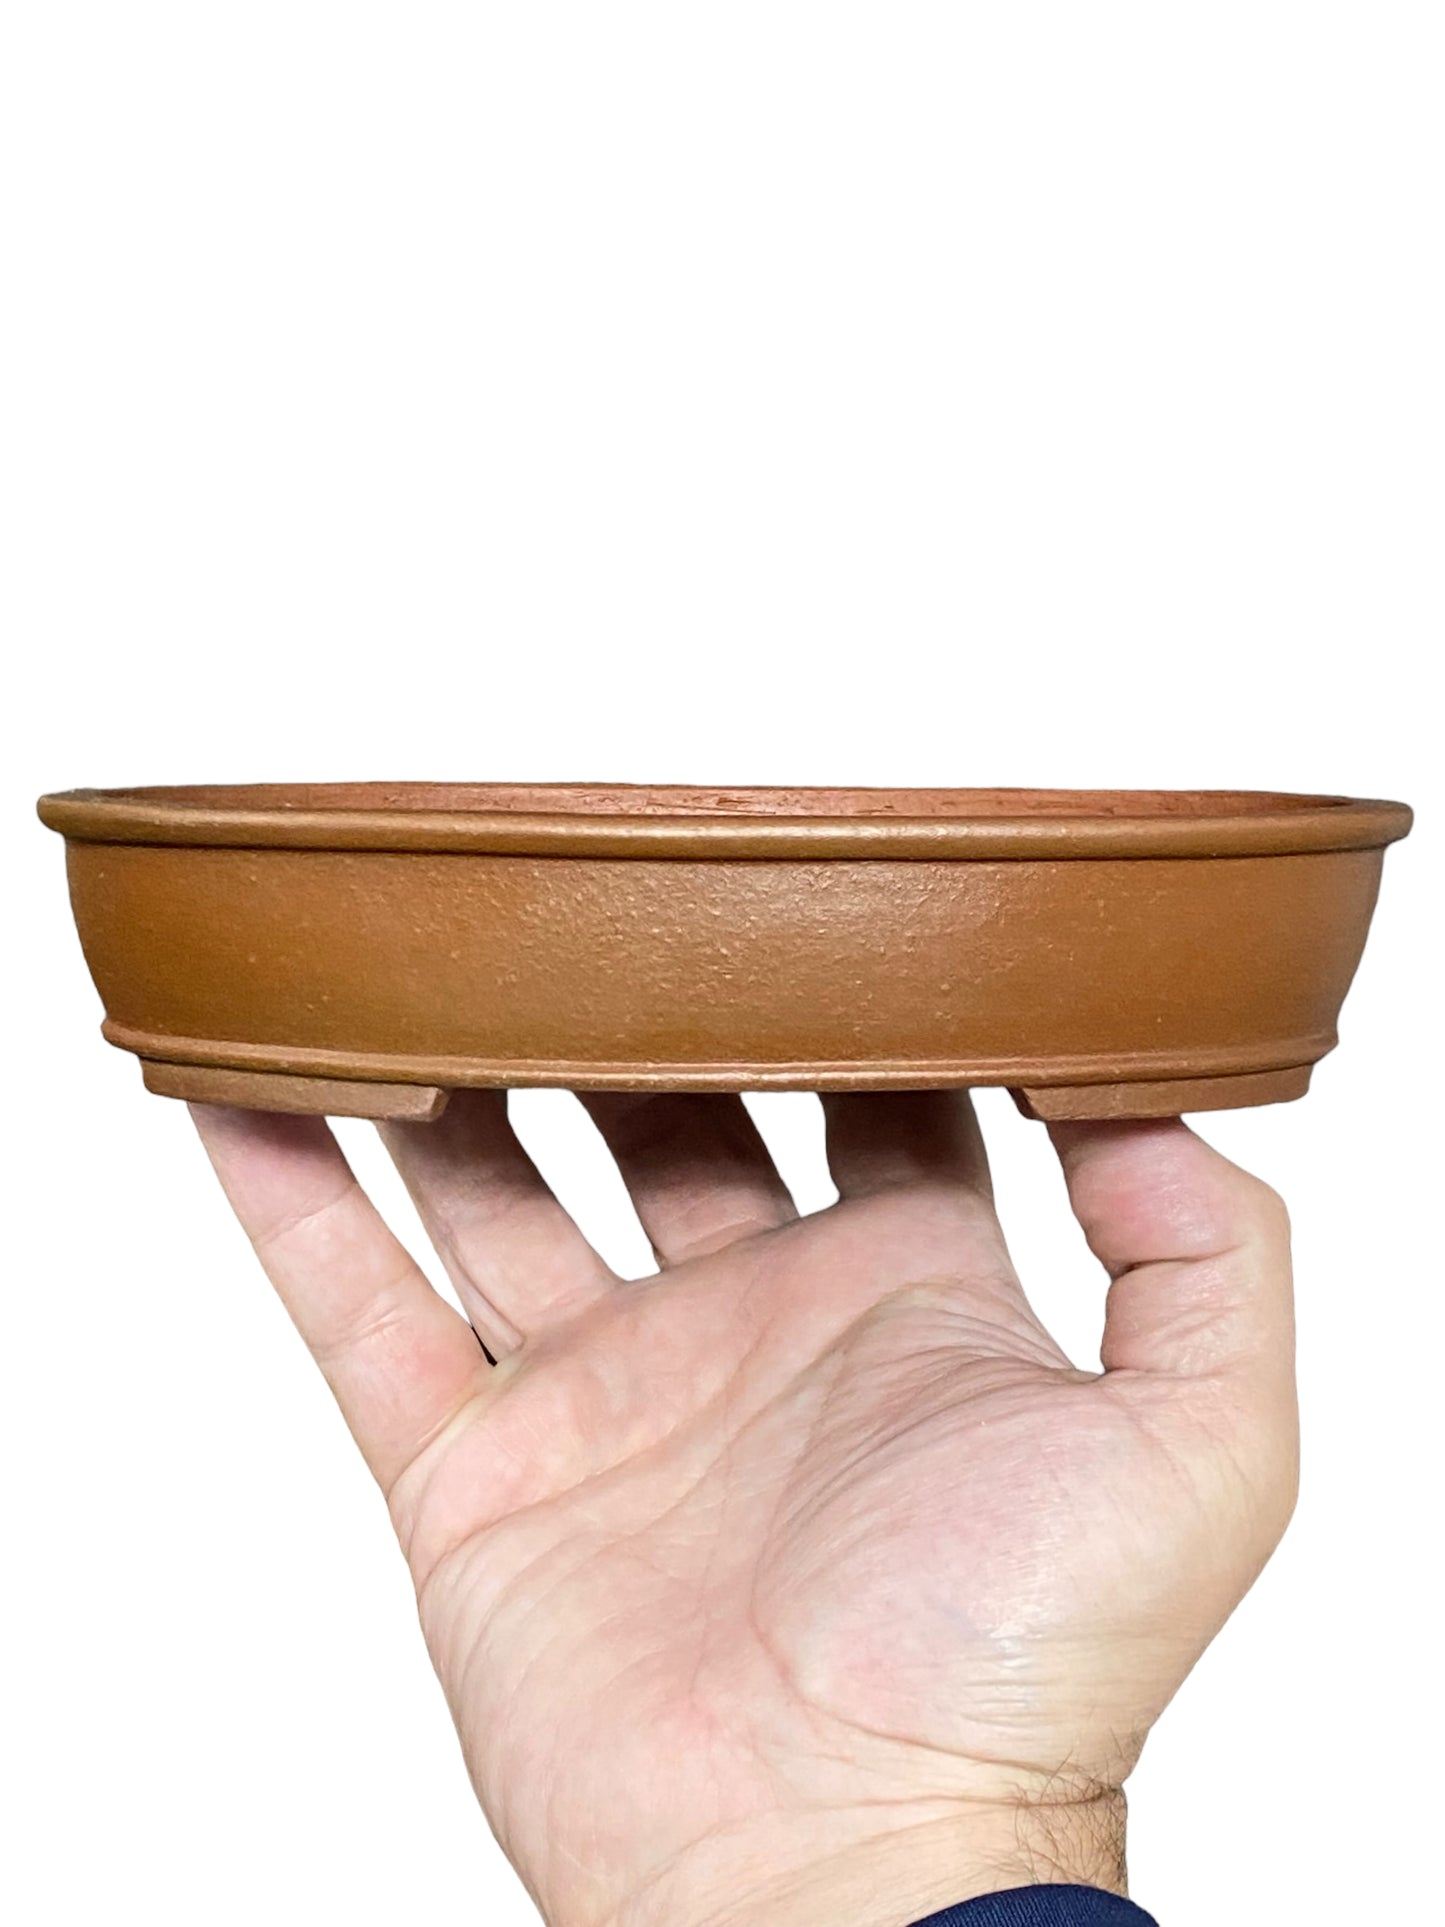 Shibakatsu - Unglazed Oval Style Bonsai Pot